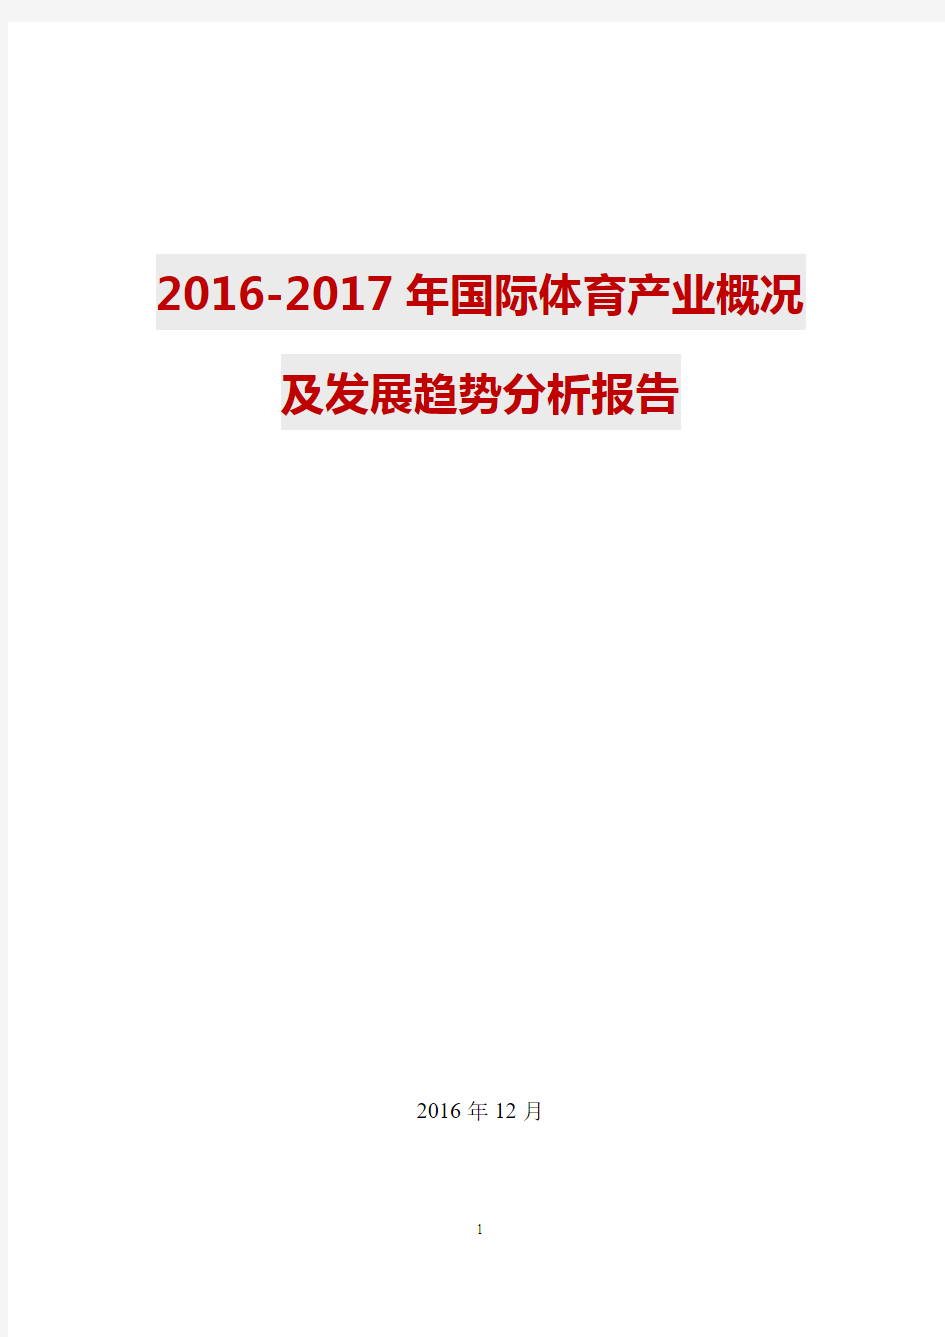 2016-2017年国际体育产业概况及发展趋势分析报告